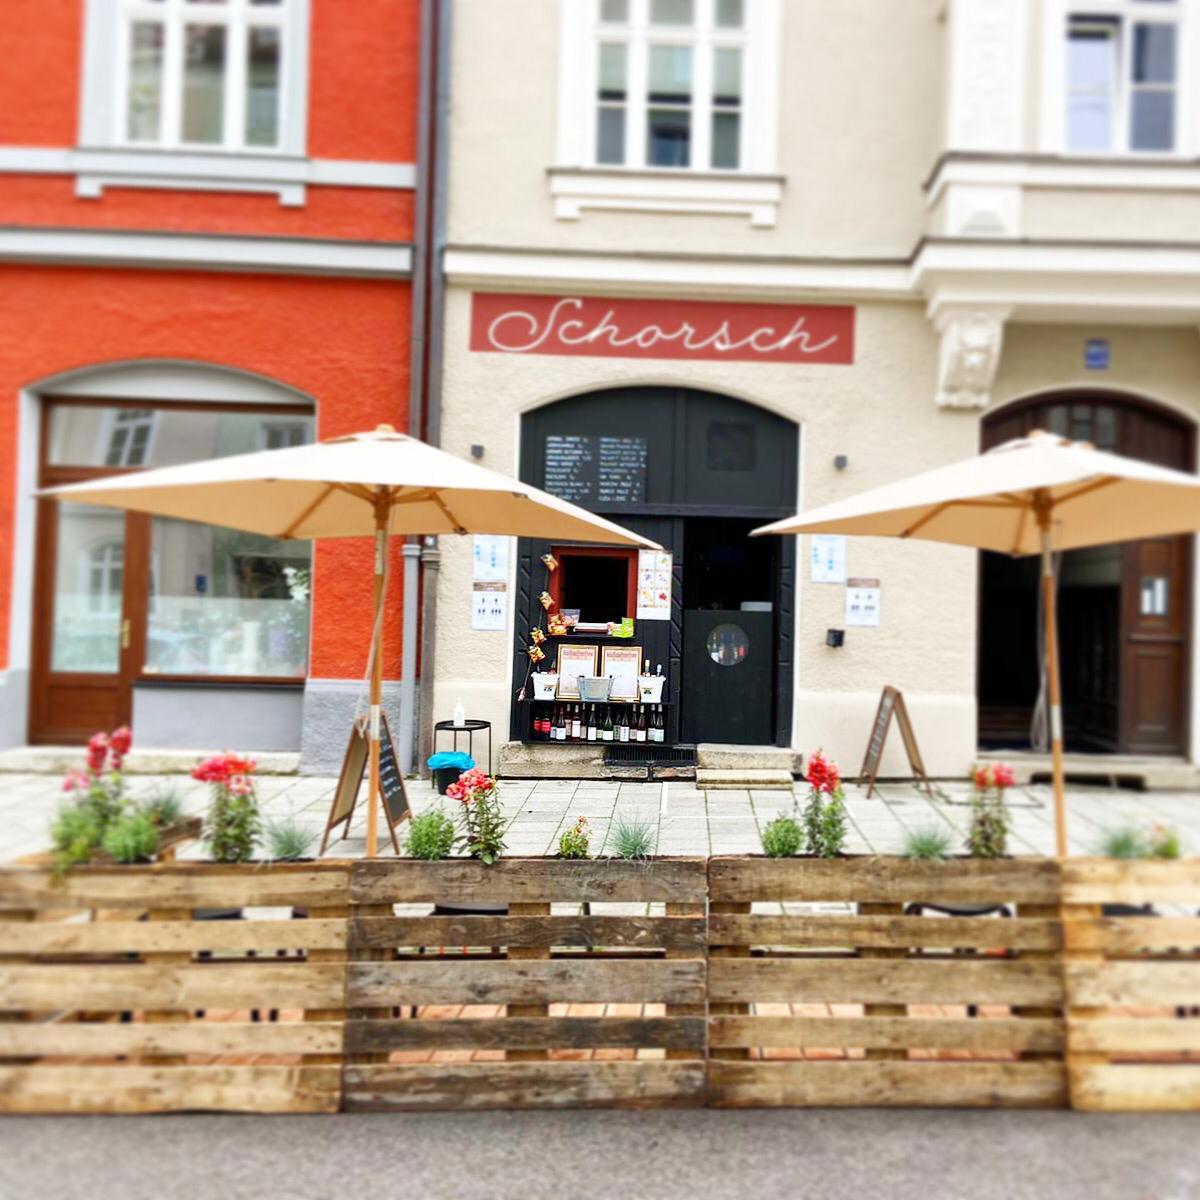 Restaurant "Schorsch Bar" in München